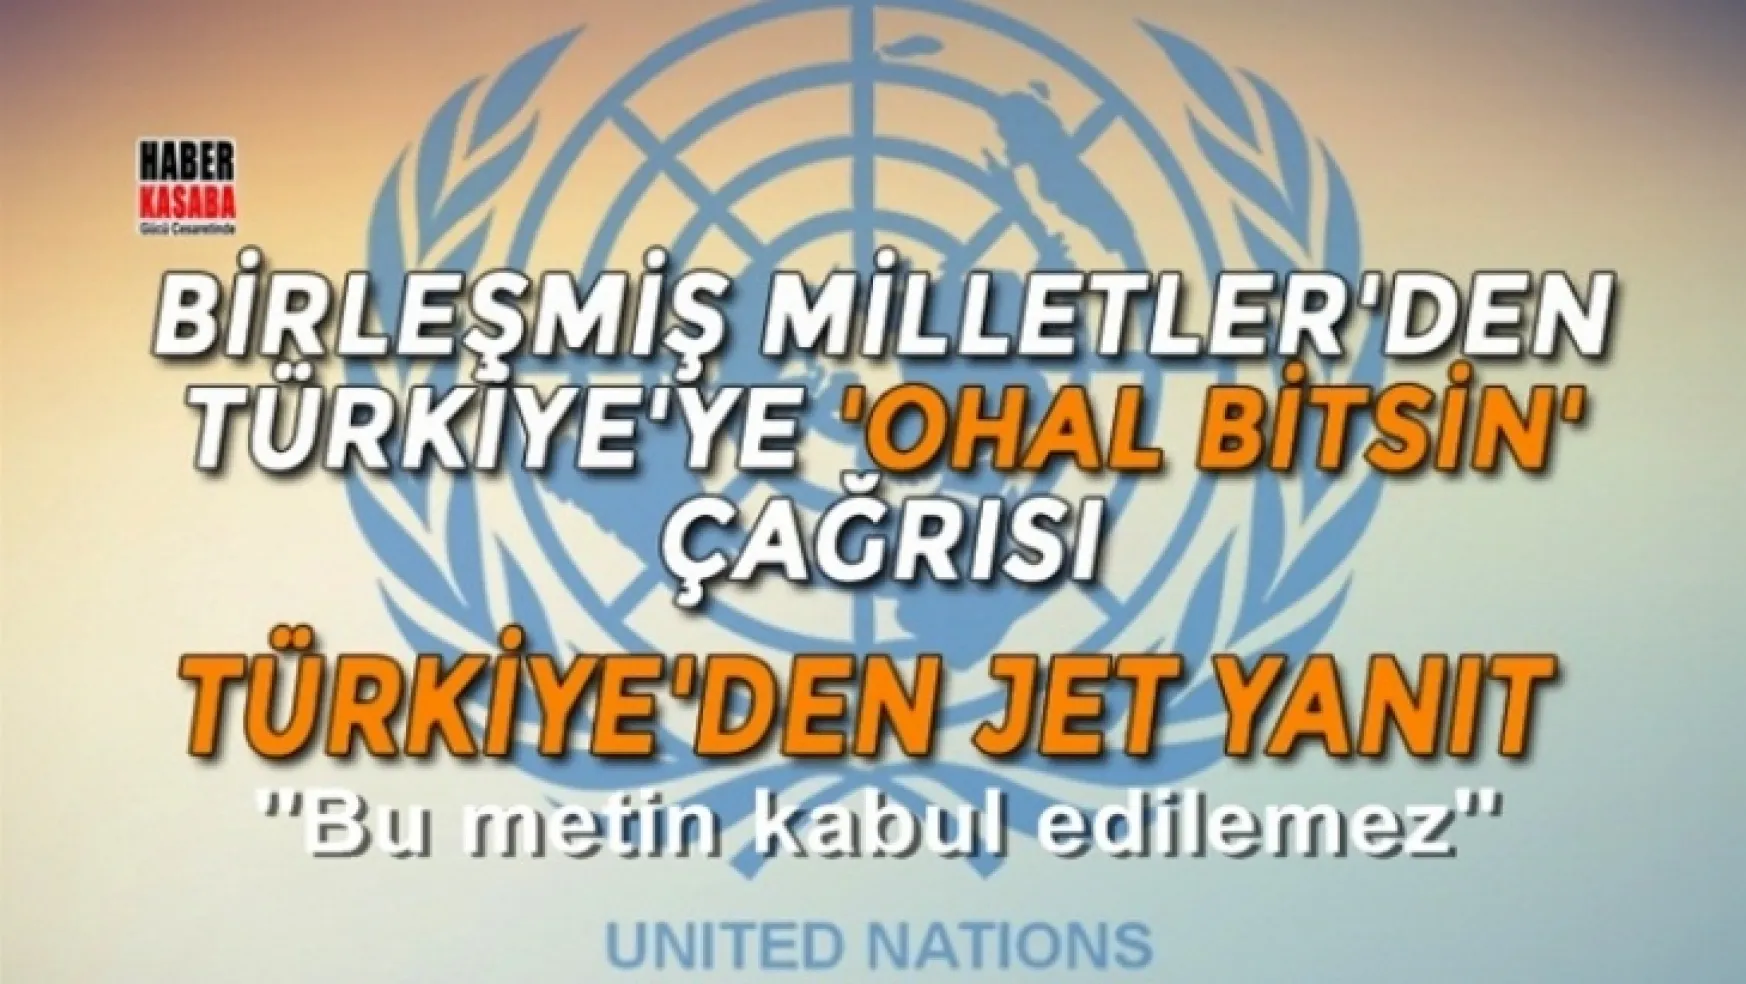 Türkiye'den Birleşmiş Milletler'e jet yanıt